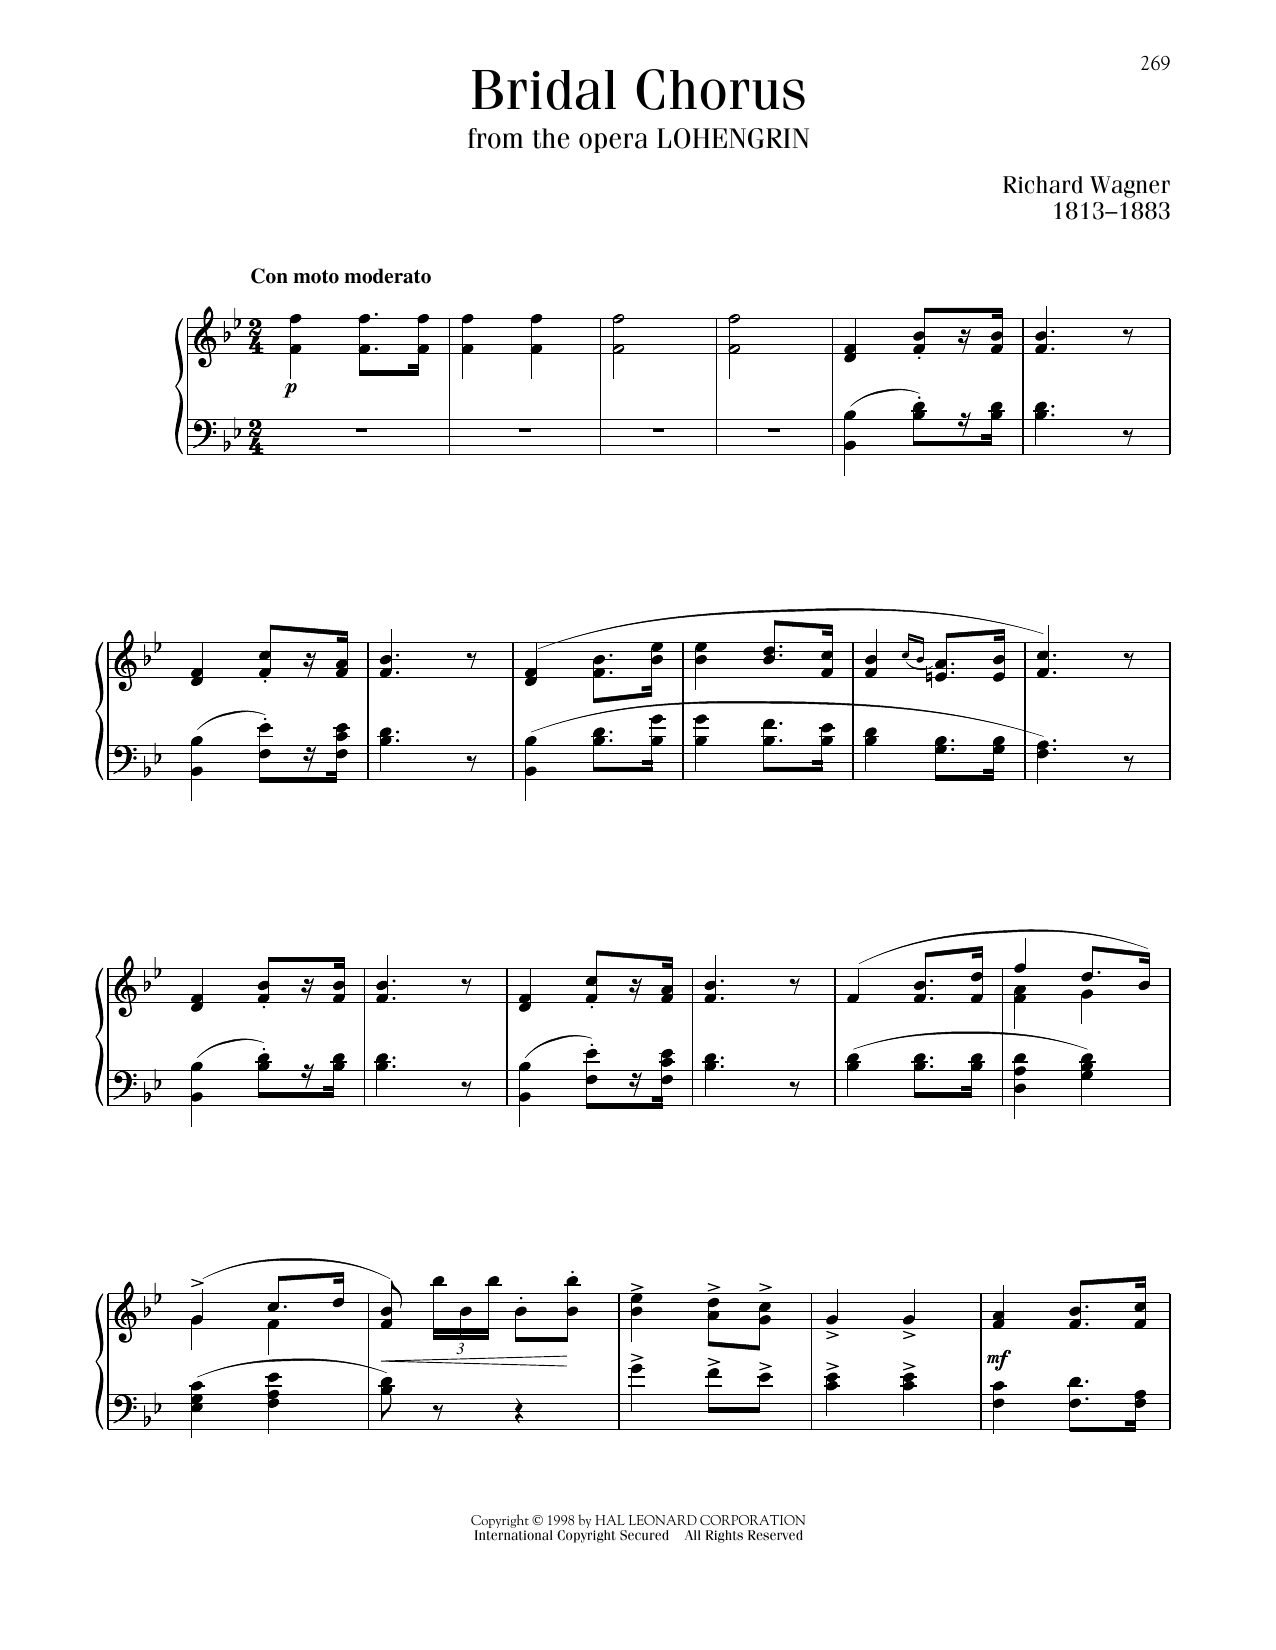 Richard Wagner Bridal Chorus sheet music notes printable PDF score